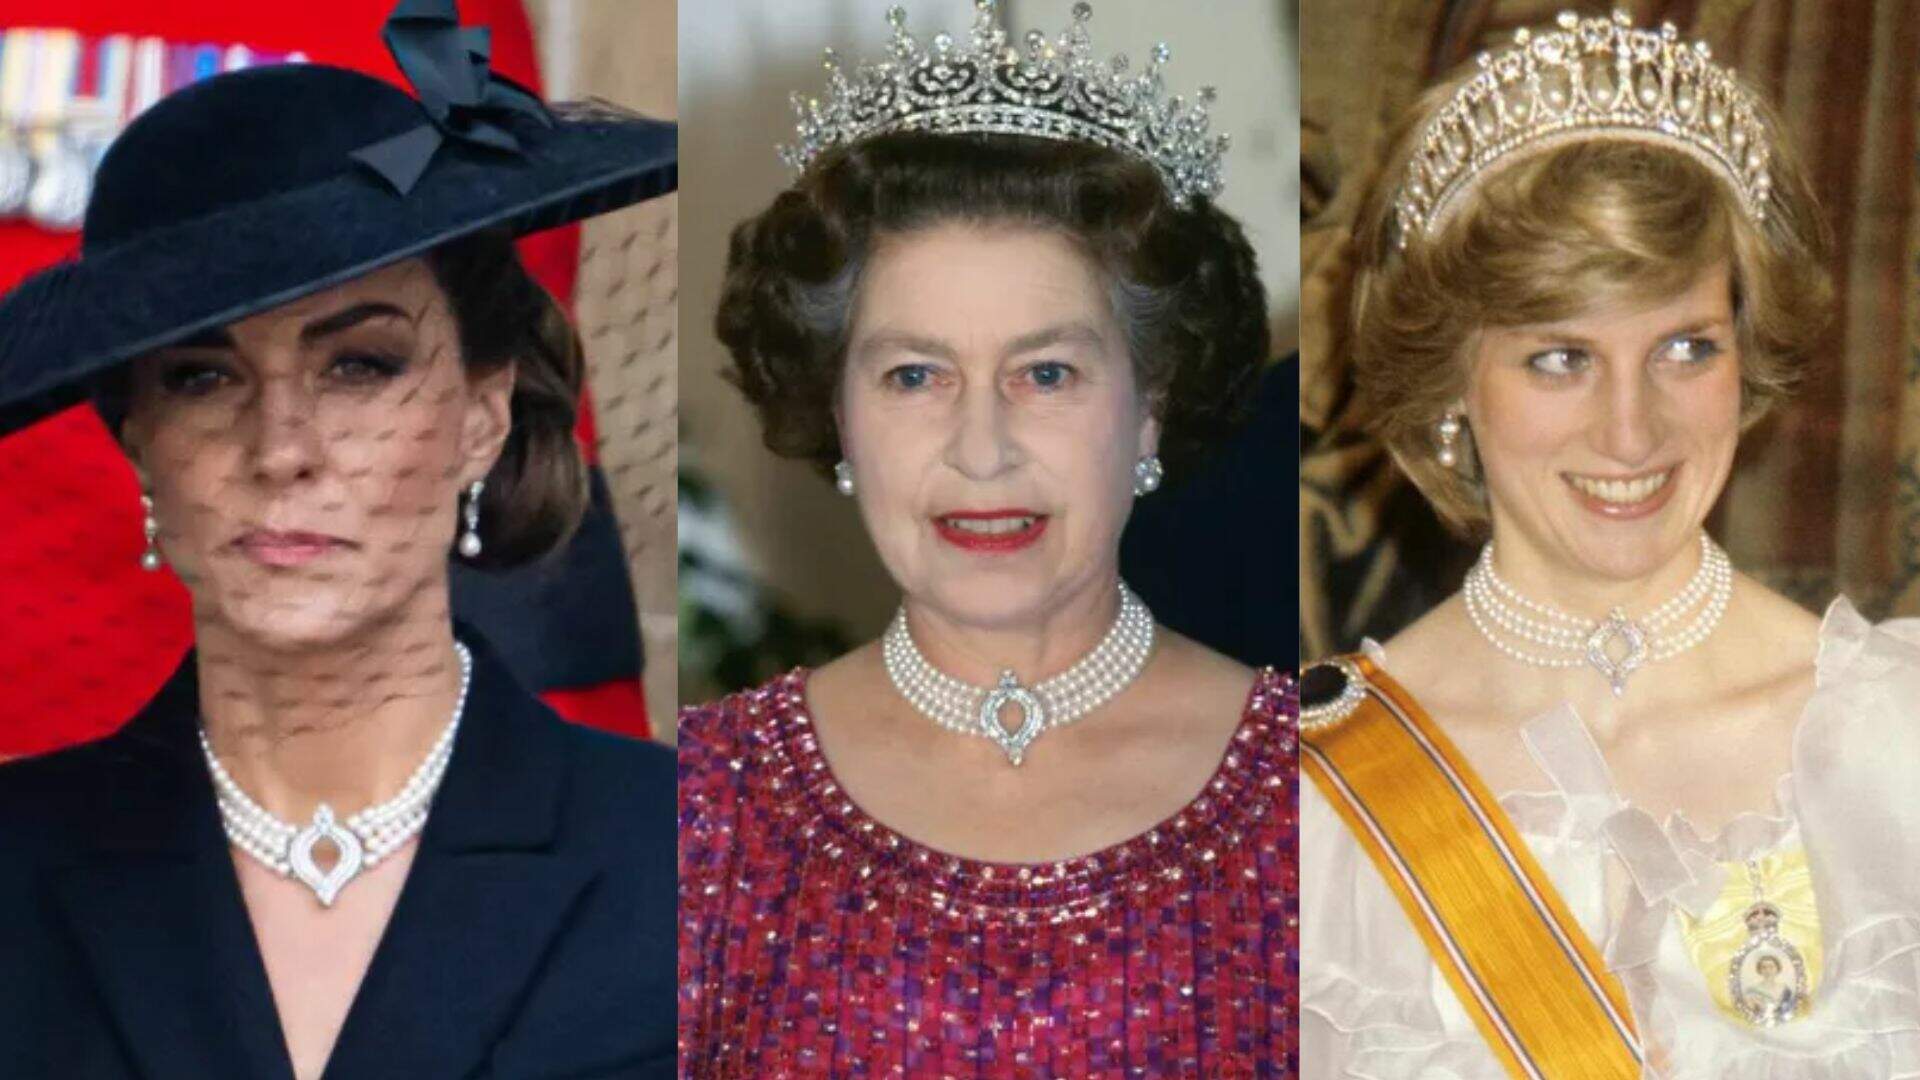 Durante o funeral, Kate Middleton usa o colar da rainha Elizabeth II - Metropolitana FM